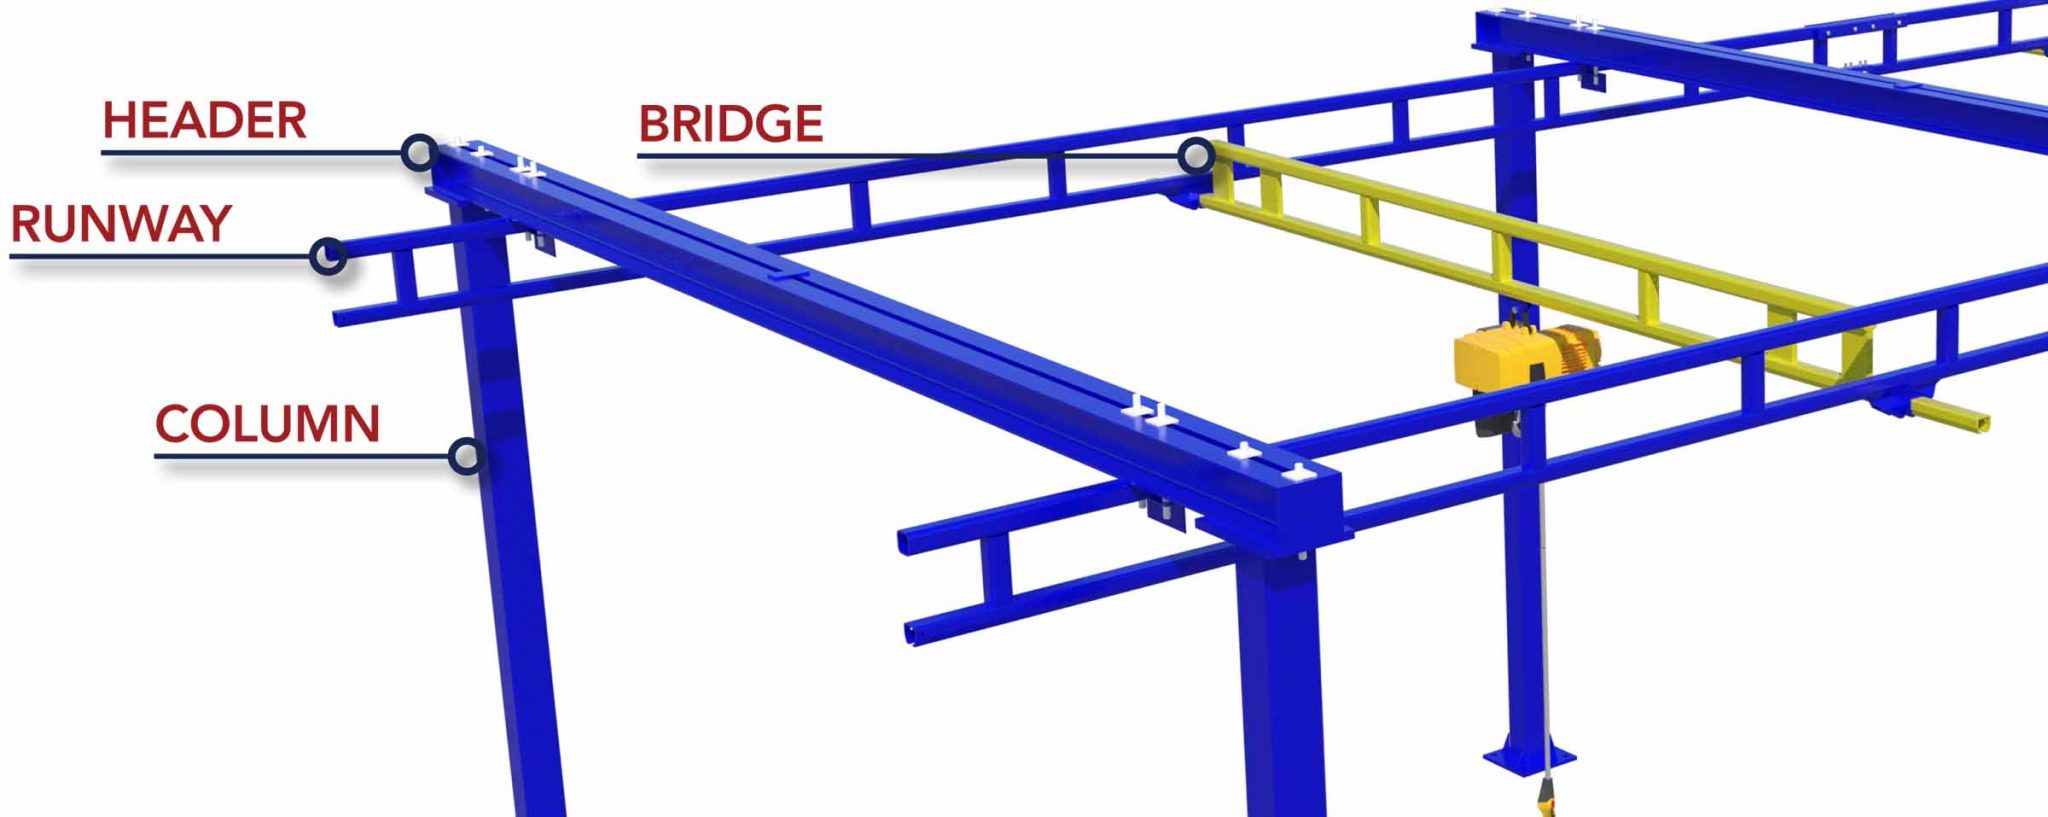 Bridge-Cranes-Anatomy